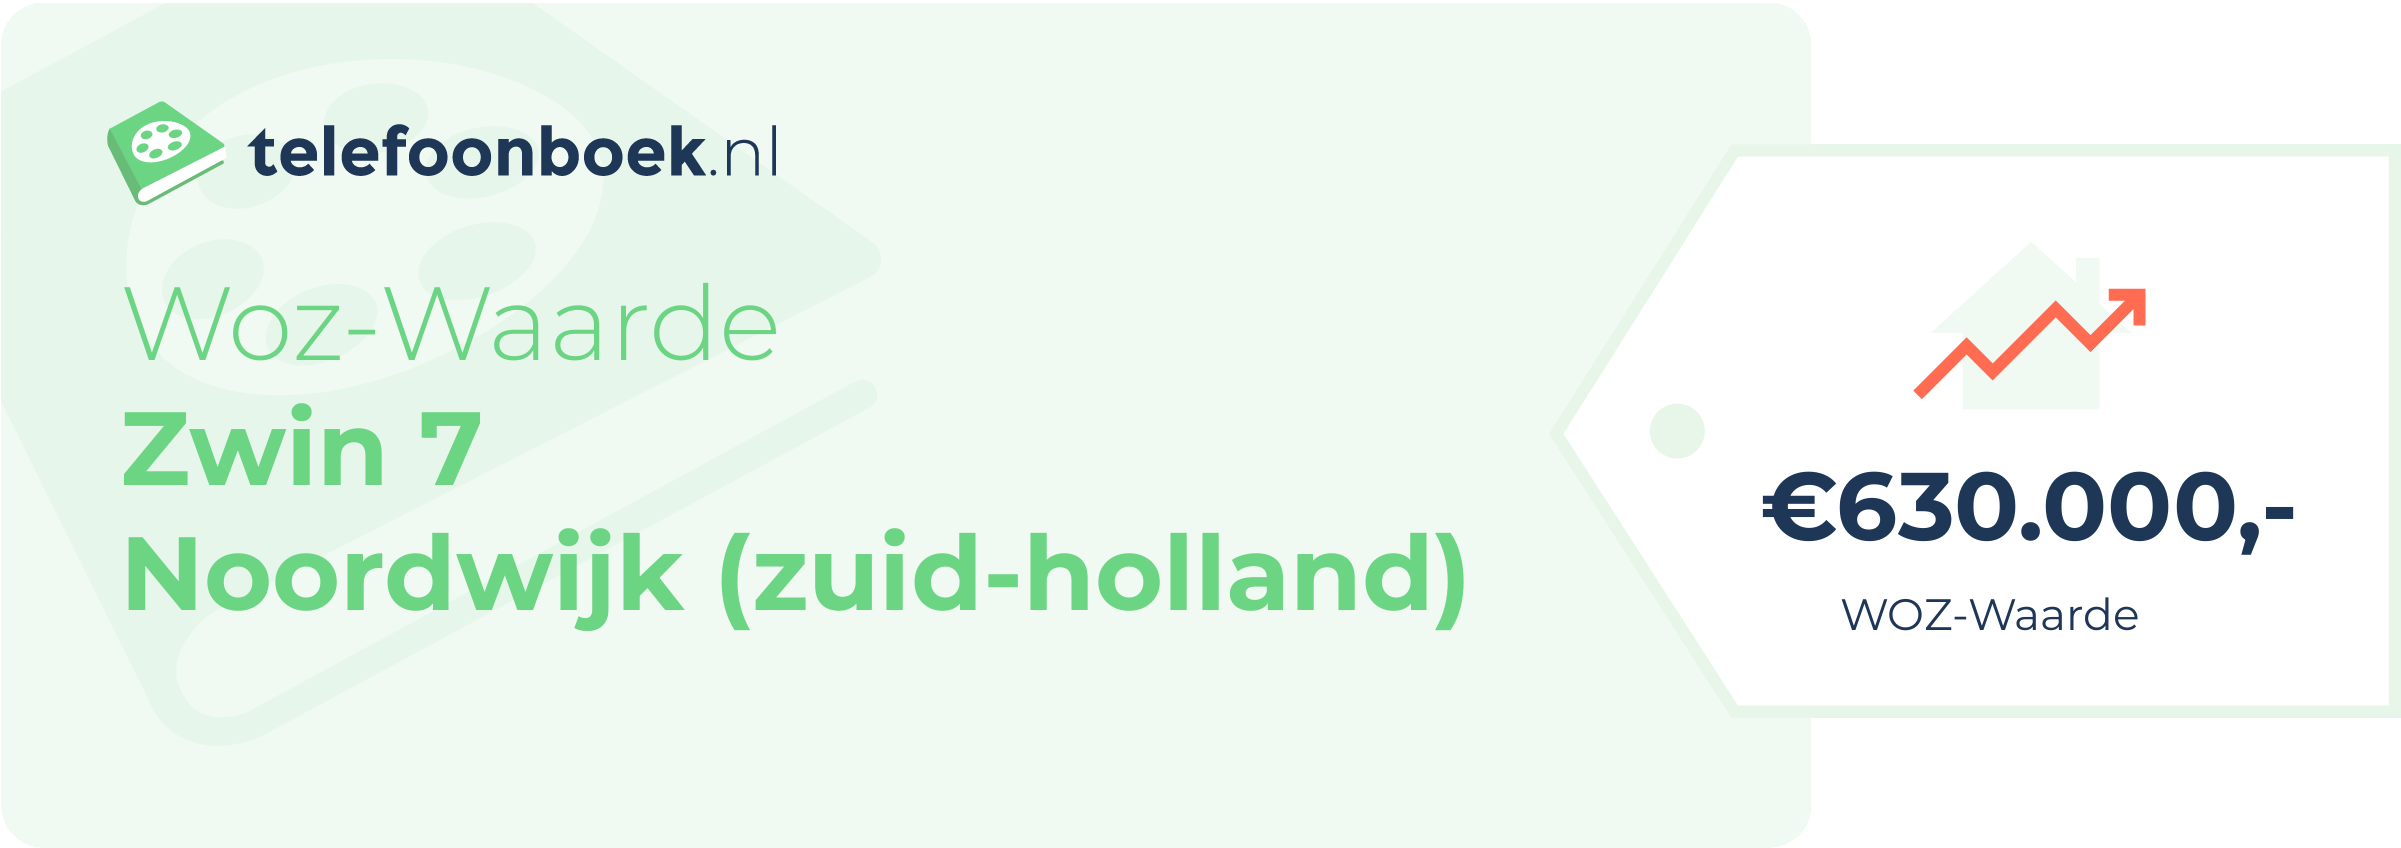 WOZ-waarde Zwin 7 Noordwijk (Zuid-Holland)